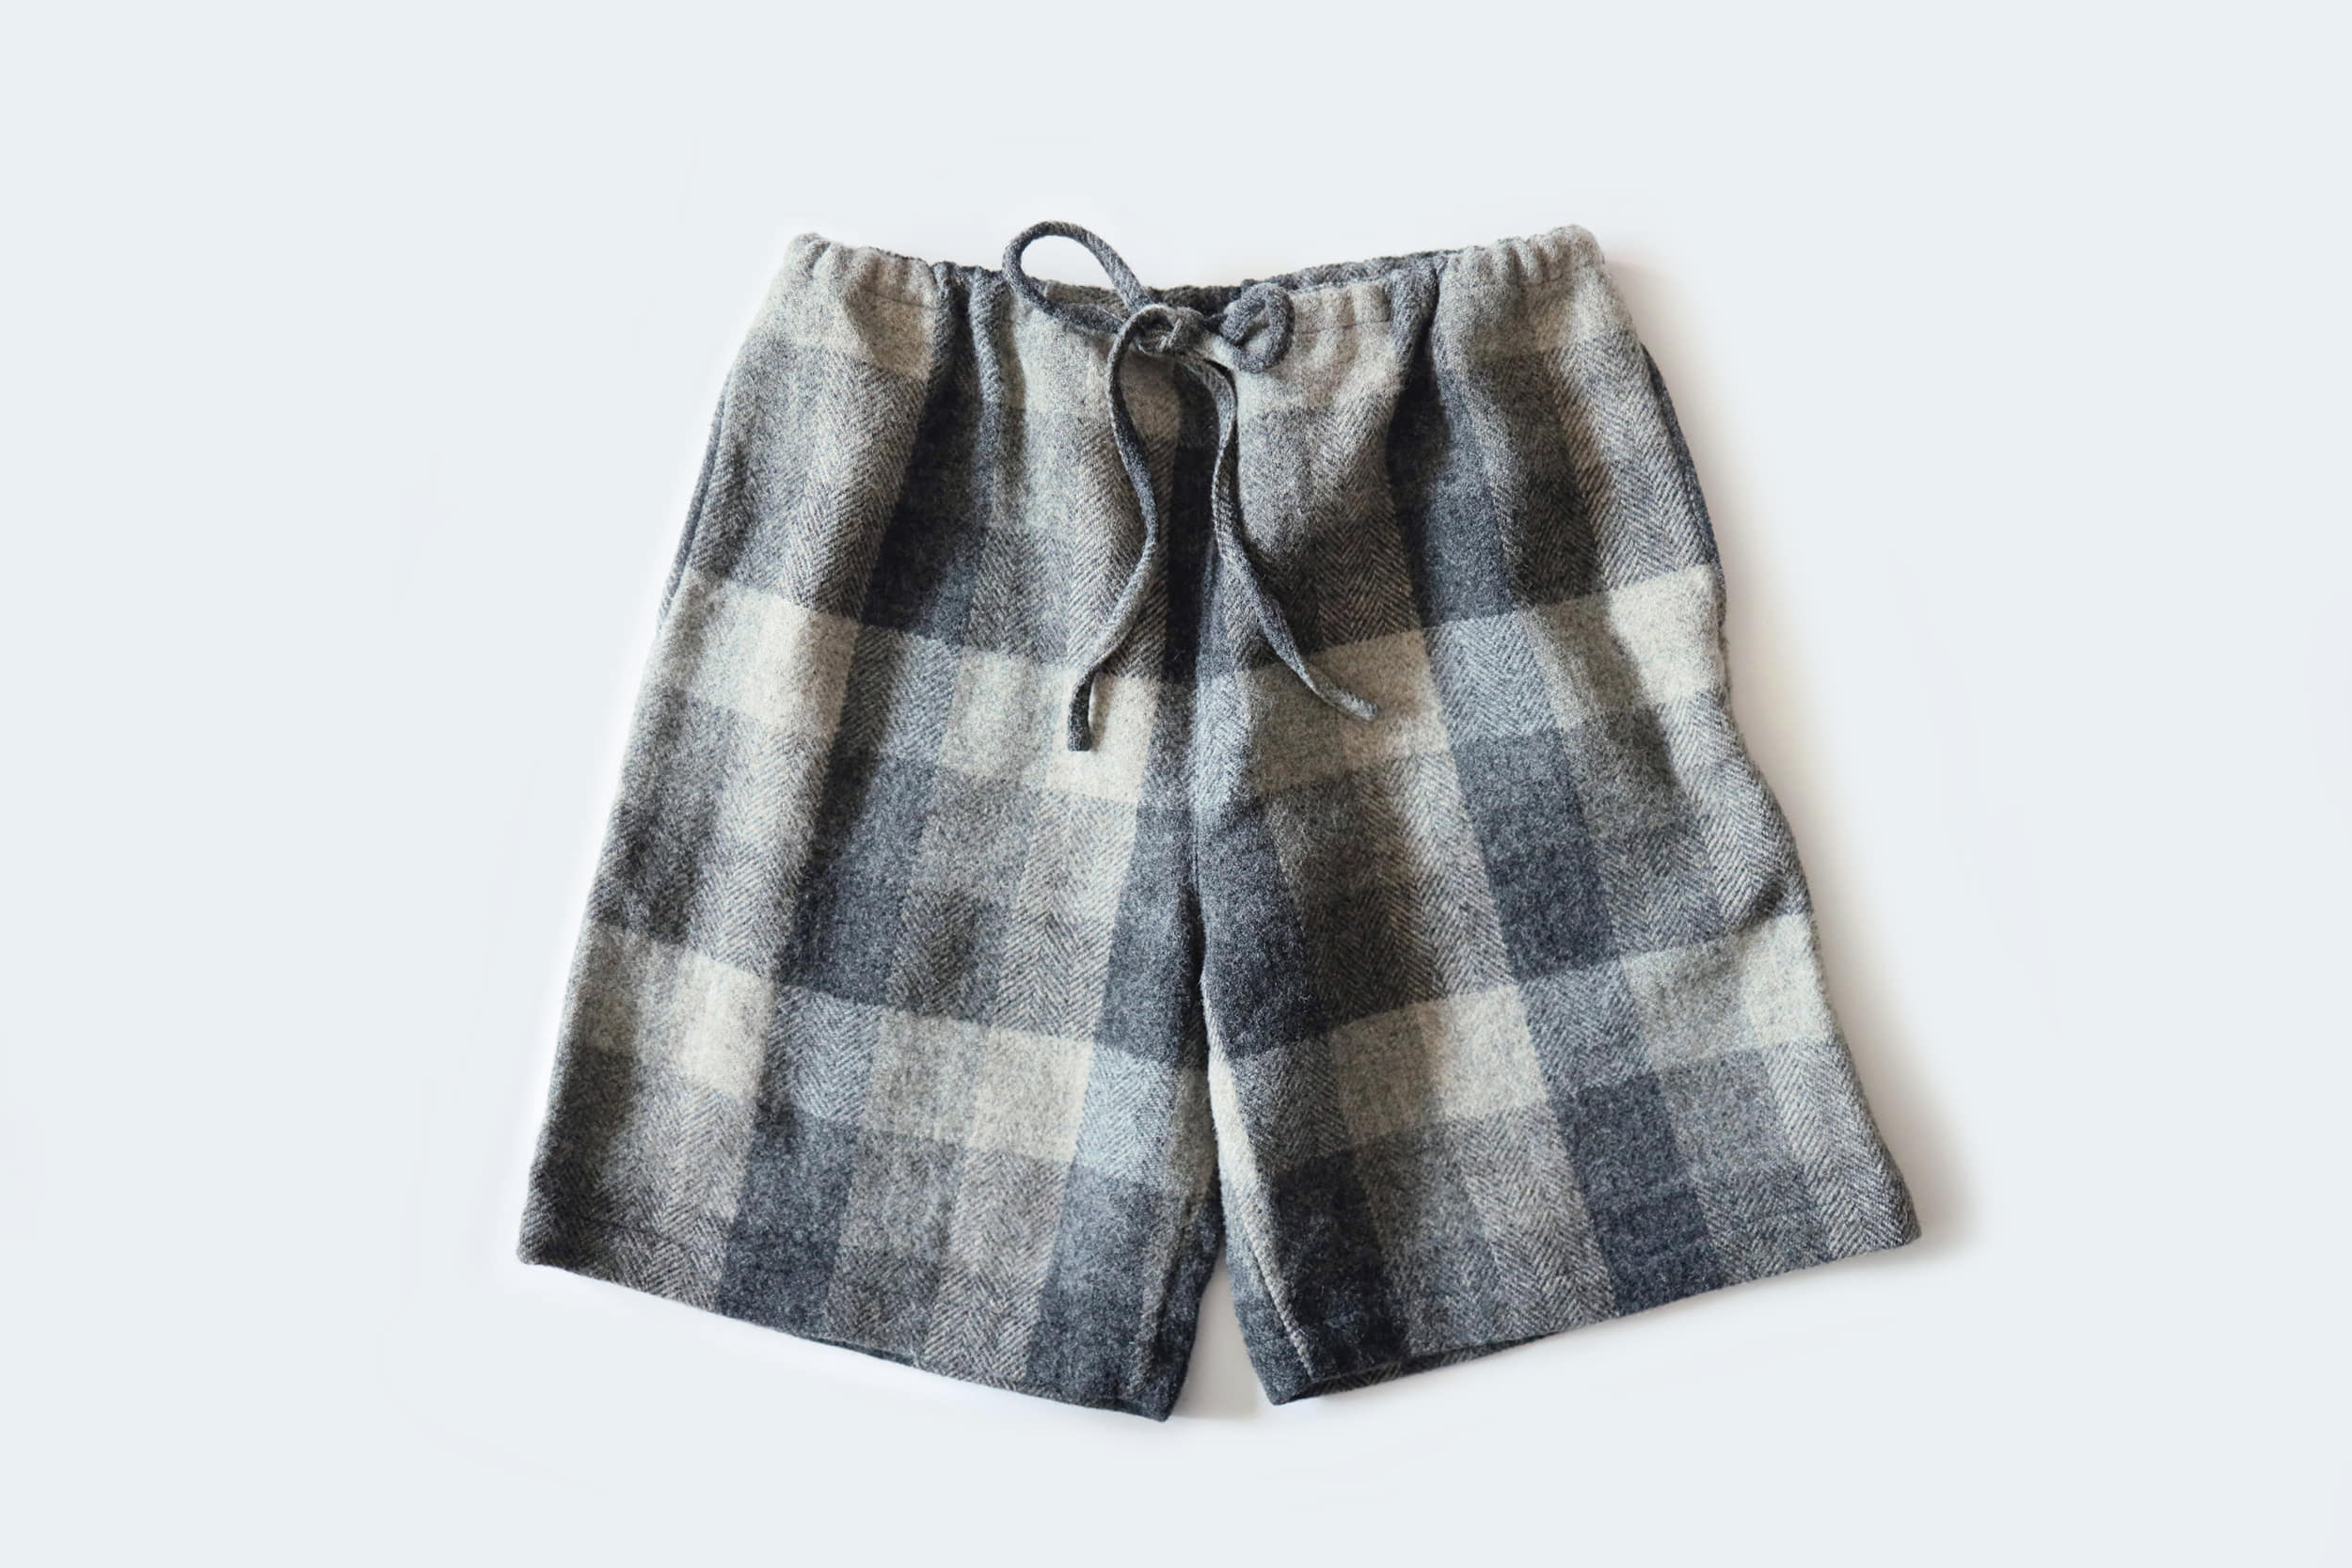 TOUJOURS  Wool drawstring shorts